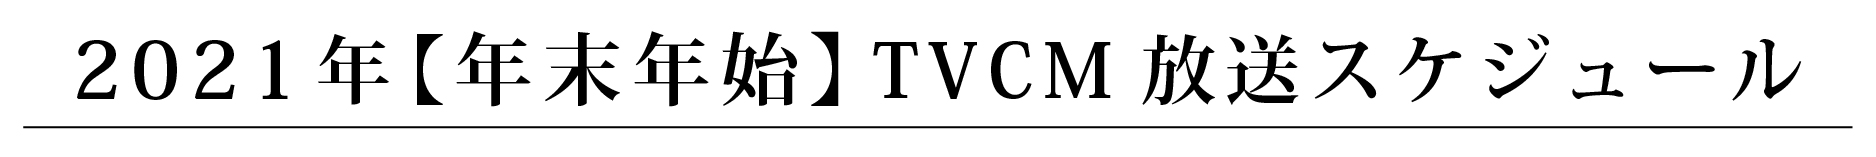 2021年 12月TVCM放送スケジュール